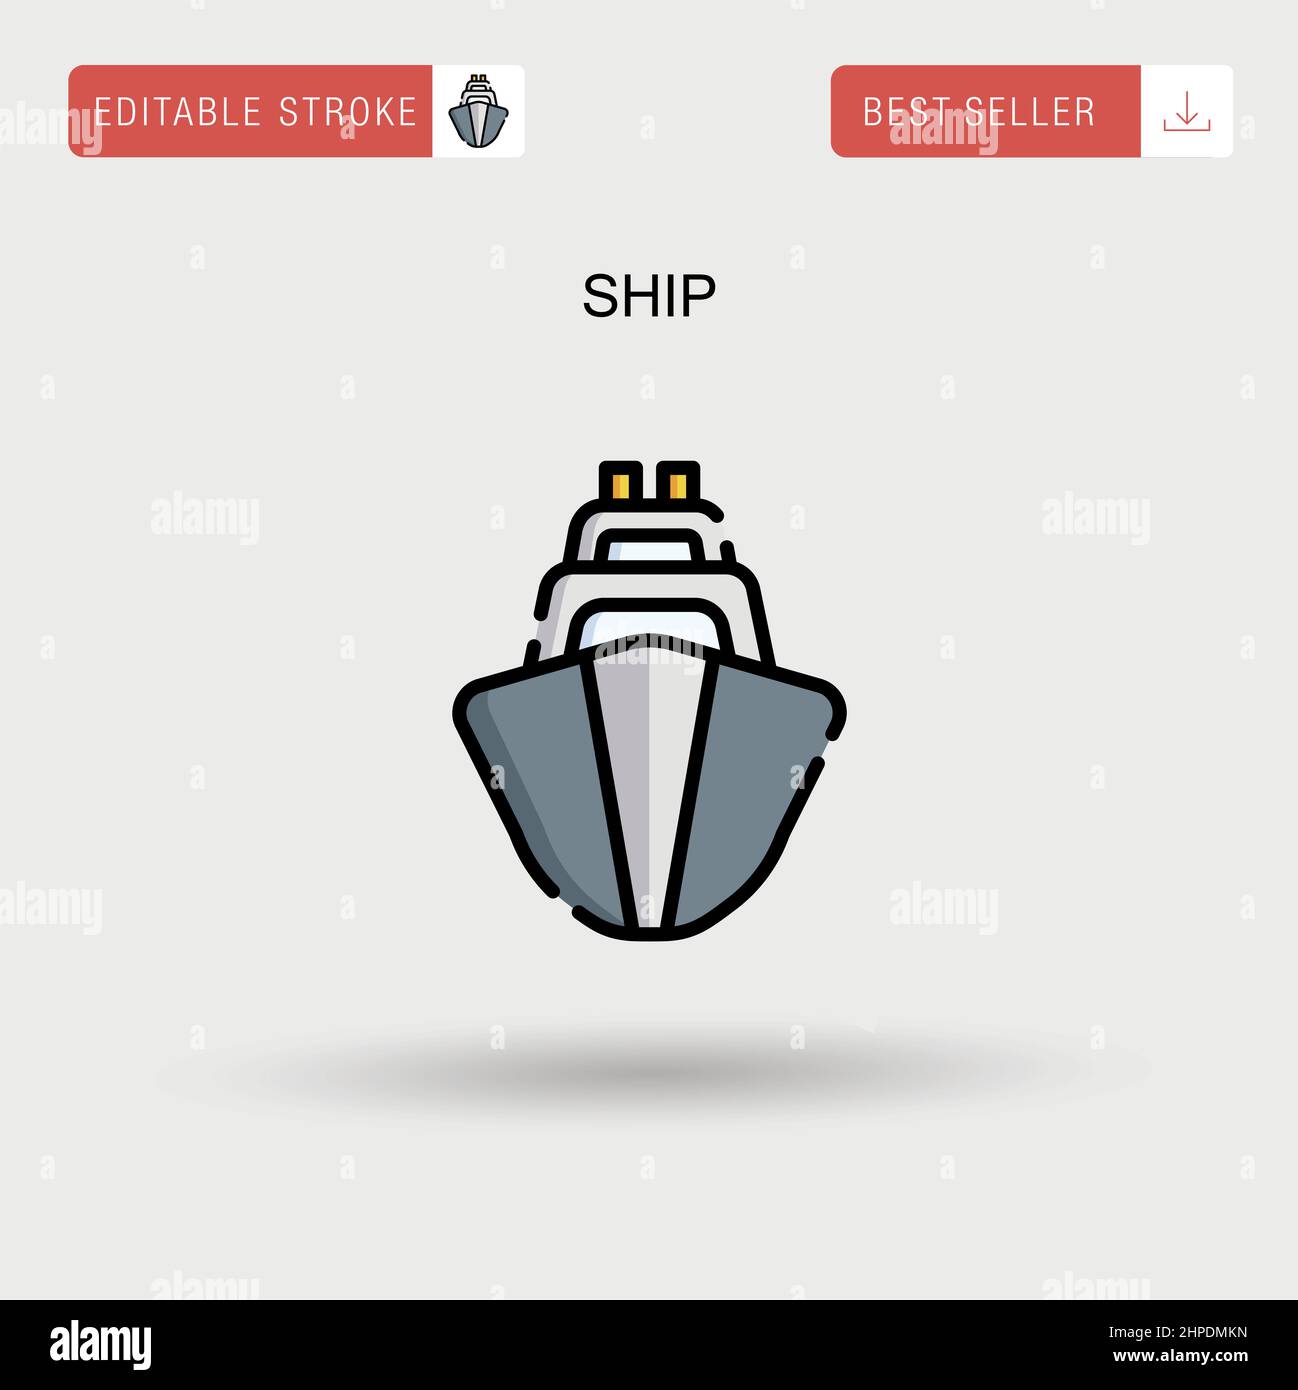 Ship Simple vector icon. Stock Vector